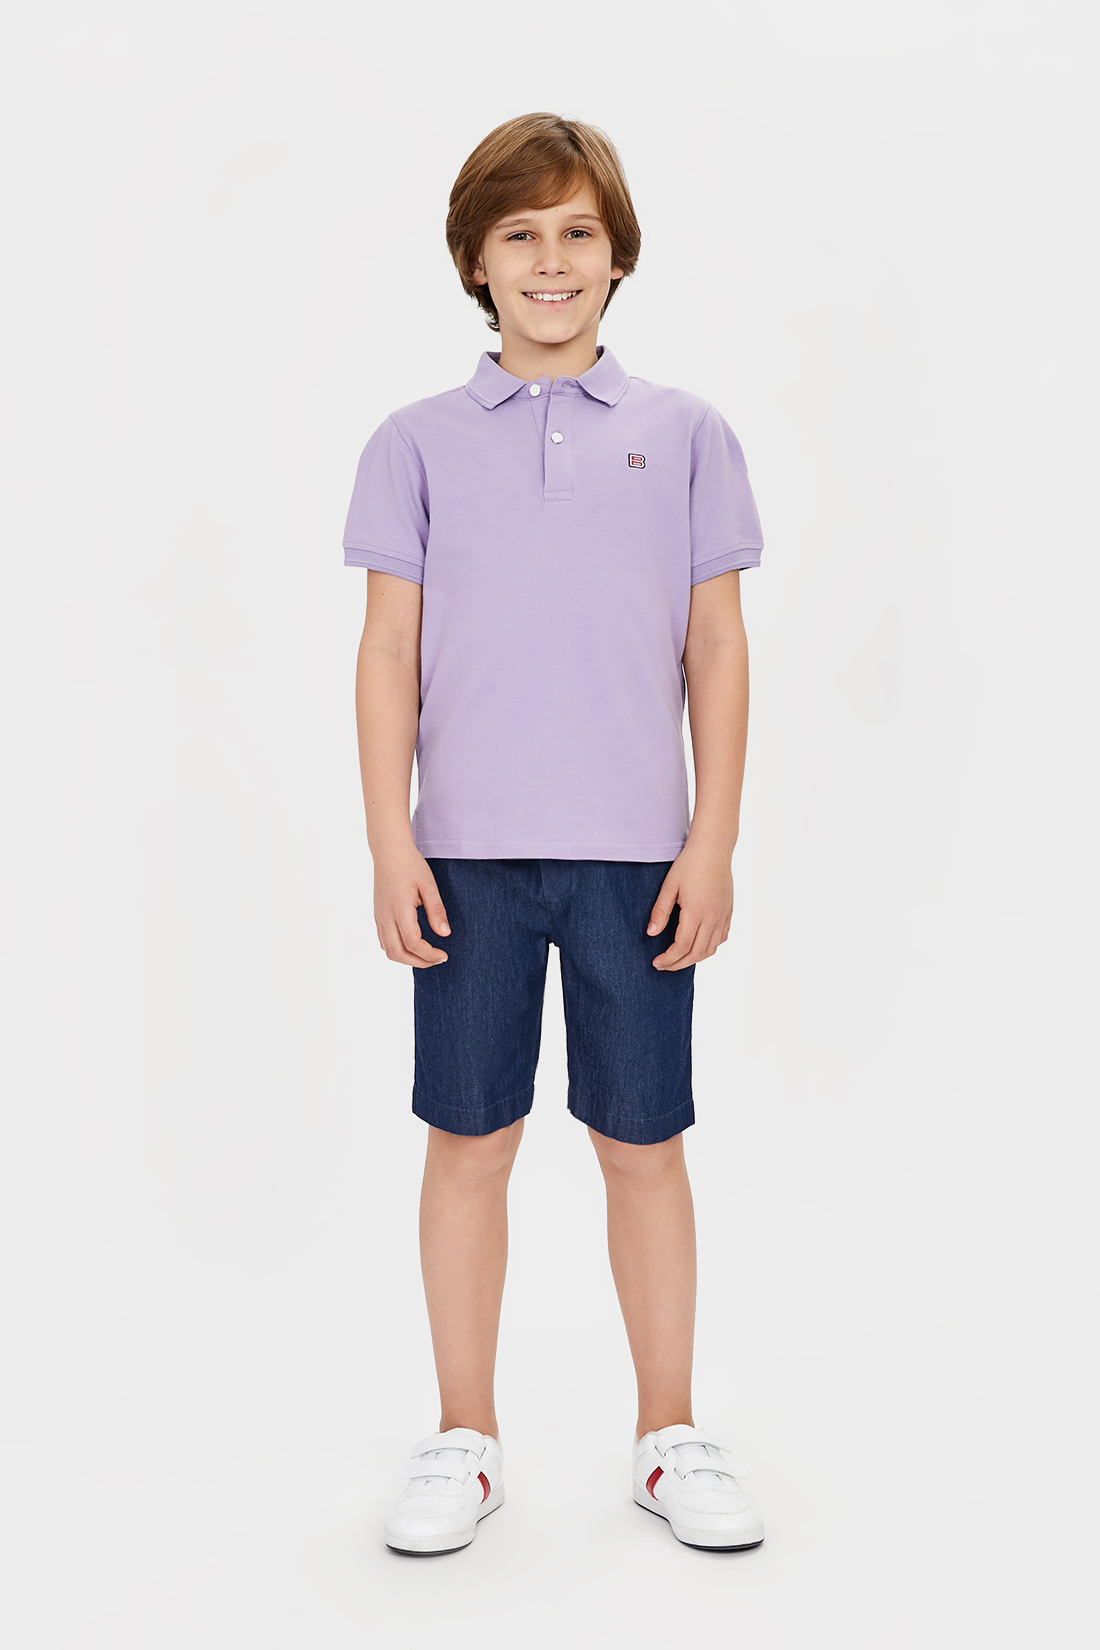 Поло для мальчика (арт. baon BK701001), размер 128, цвет фиолетовый Поло для мальчика (арт. baon BK701001) - фото 4